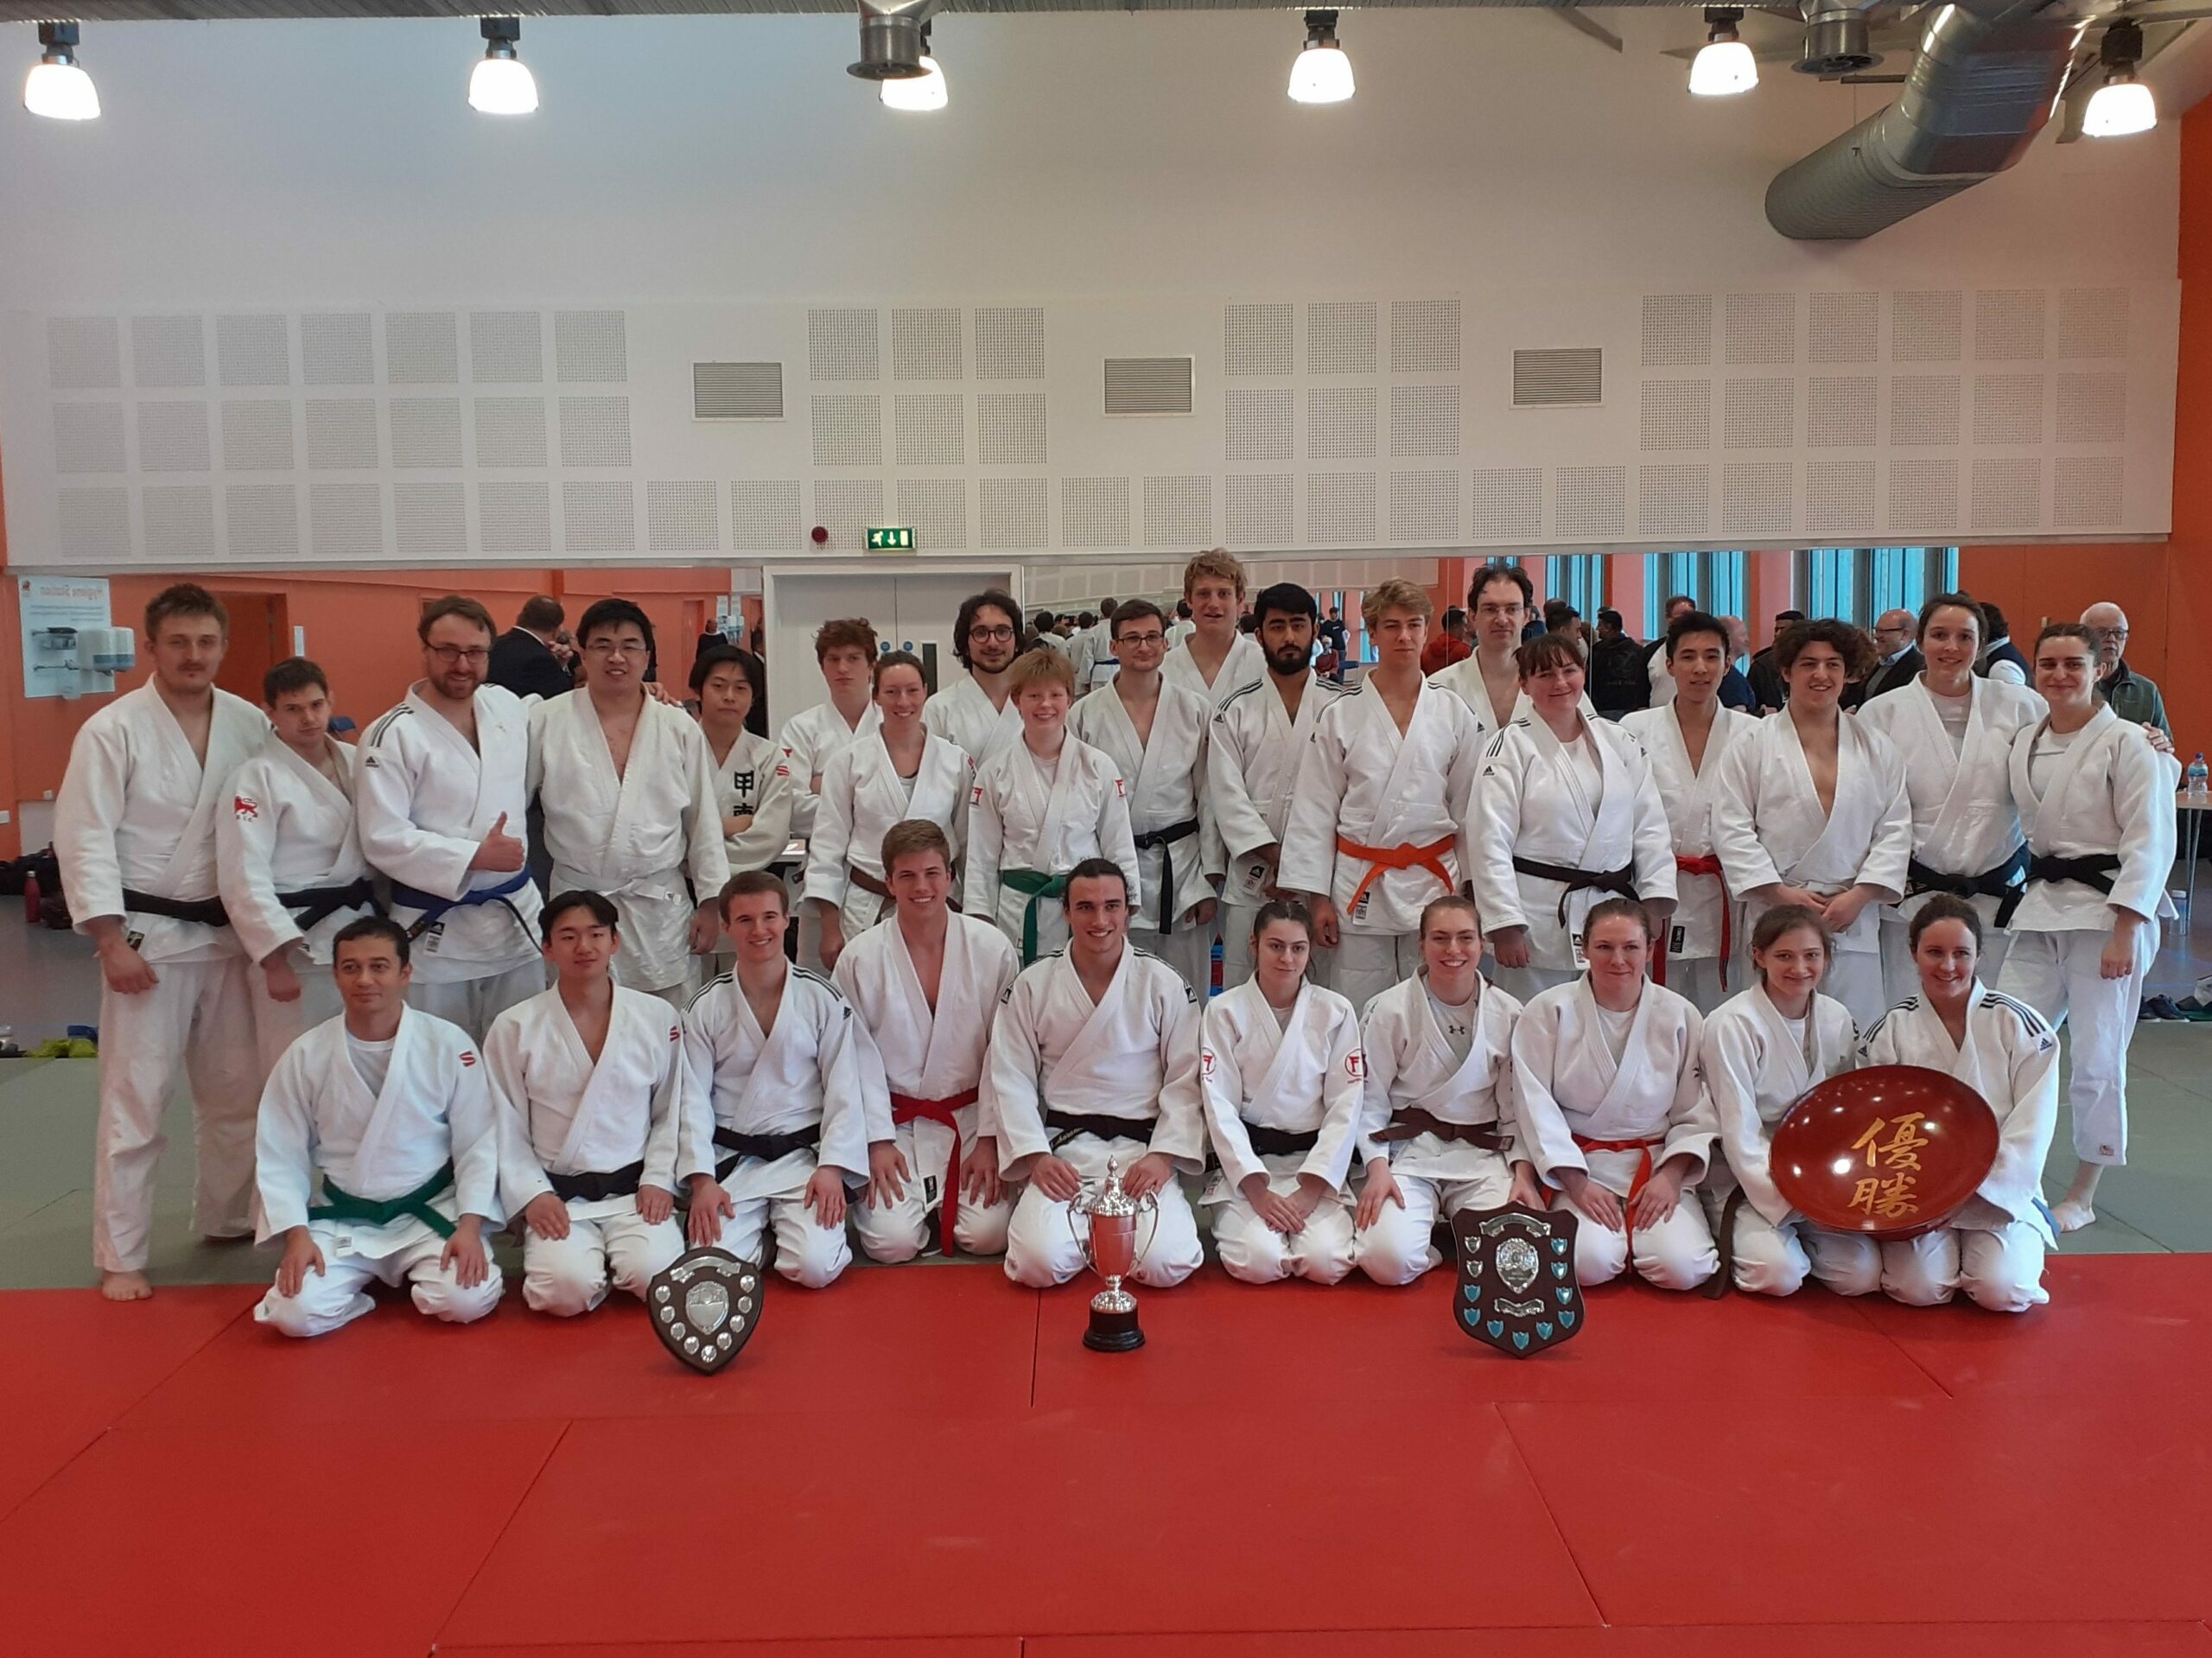 Varsity 2022 Cambridge judo teams pose with trophies